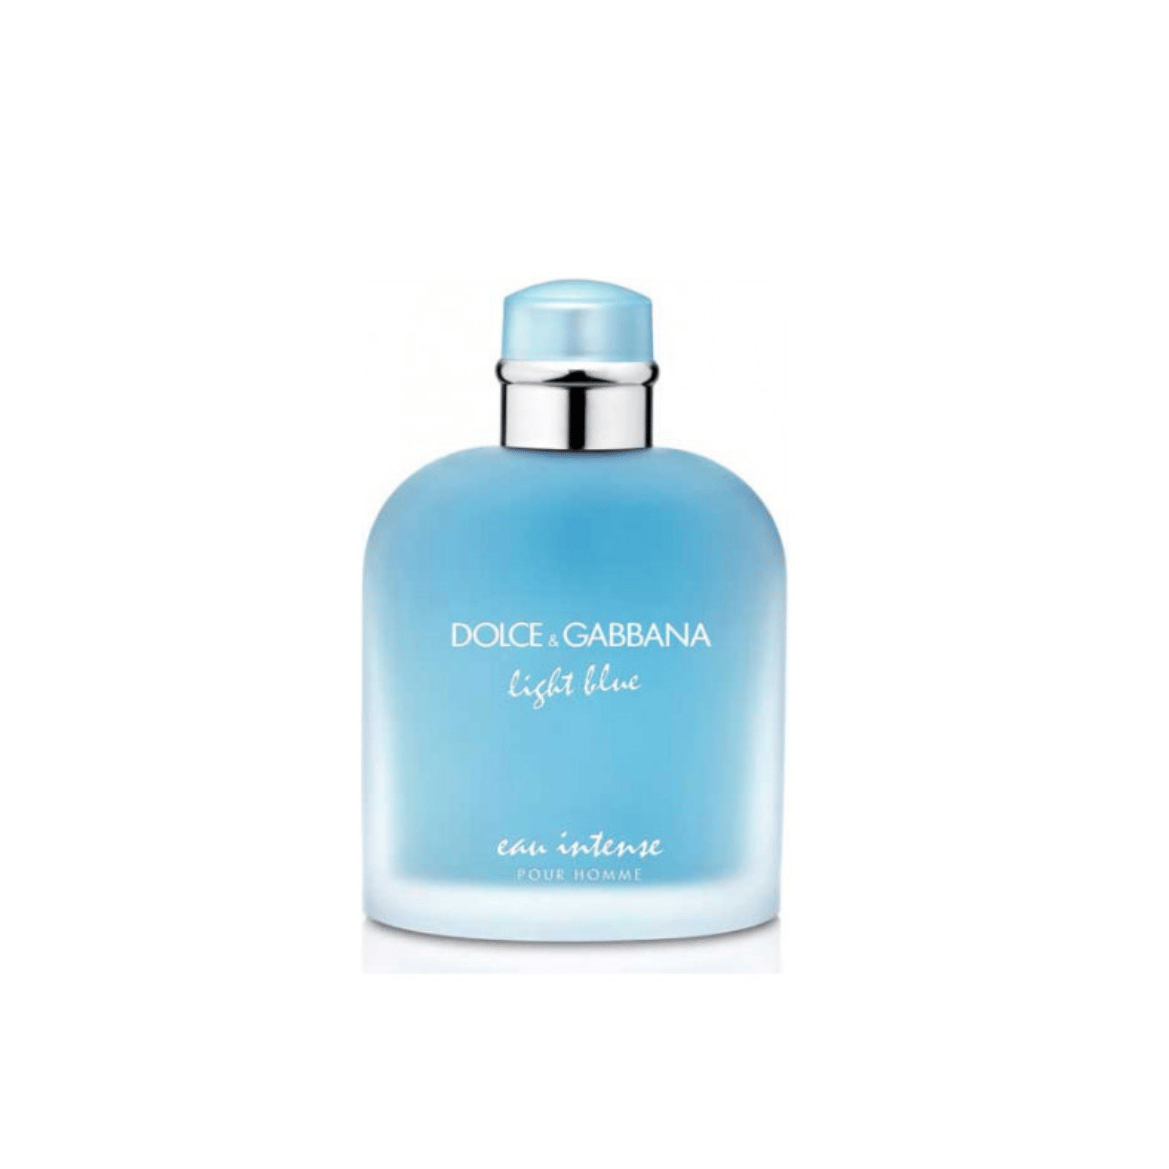 D&G Light Blue Pour Homme Eau de Parfum Intense - www.htheperfumestoreinc.com  #perfume